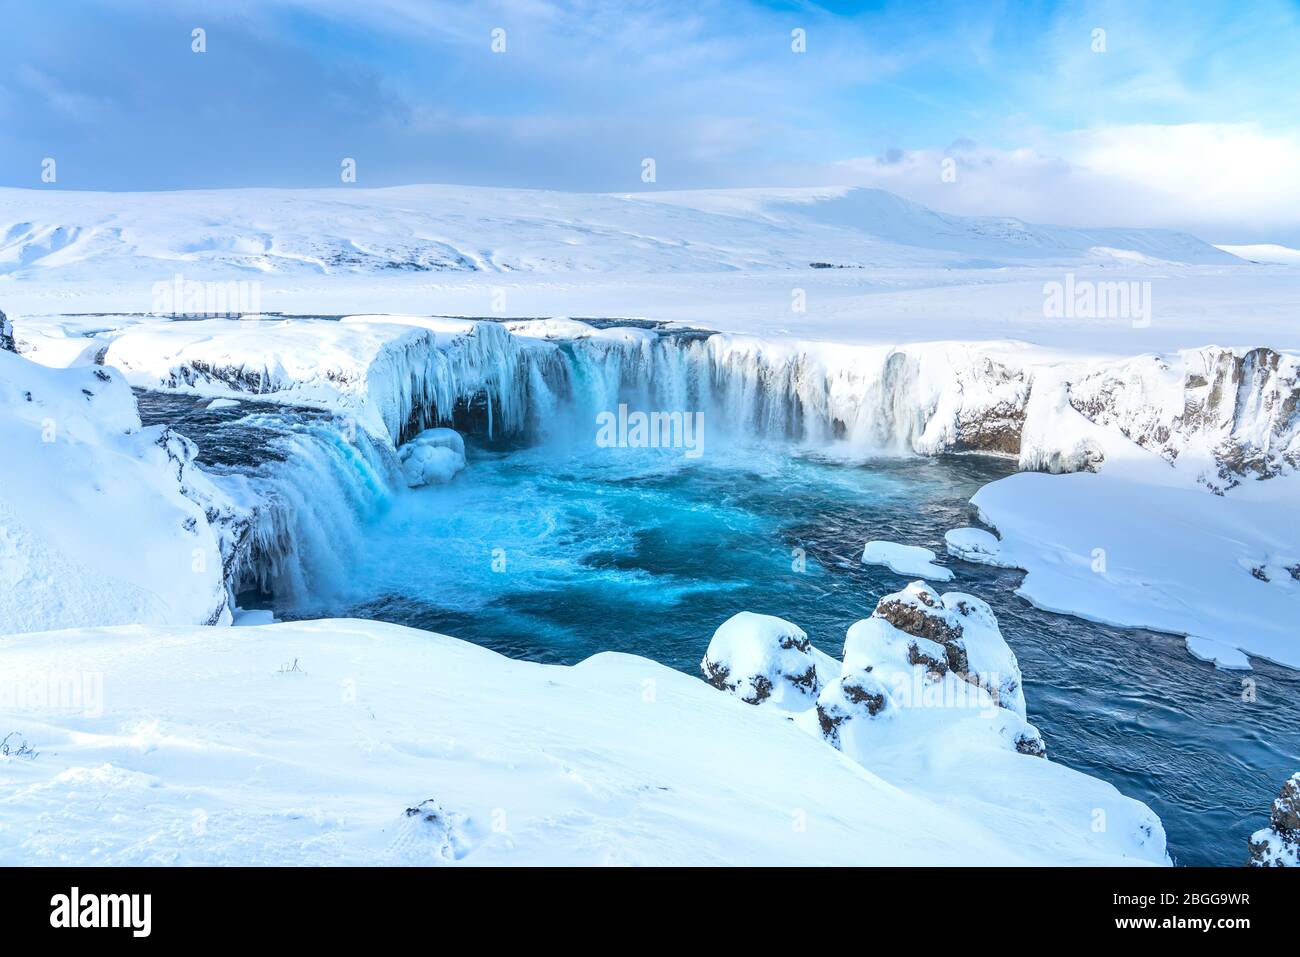 La rivière islandaise à moitié gelée Skjalfandafljot qui coule au-dessus de la cascade Godafoss en hiver. Toujours très fluide mais neige couverte et avec de grandes iciques Banque D'Images